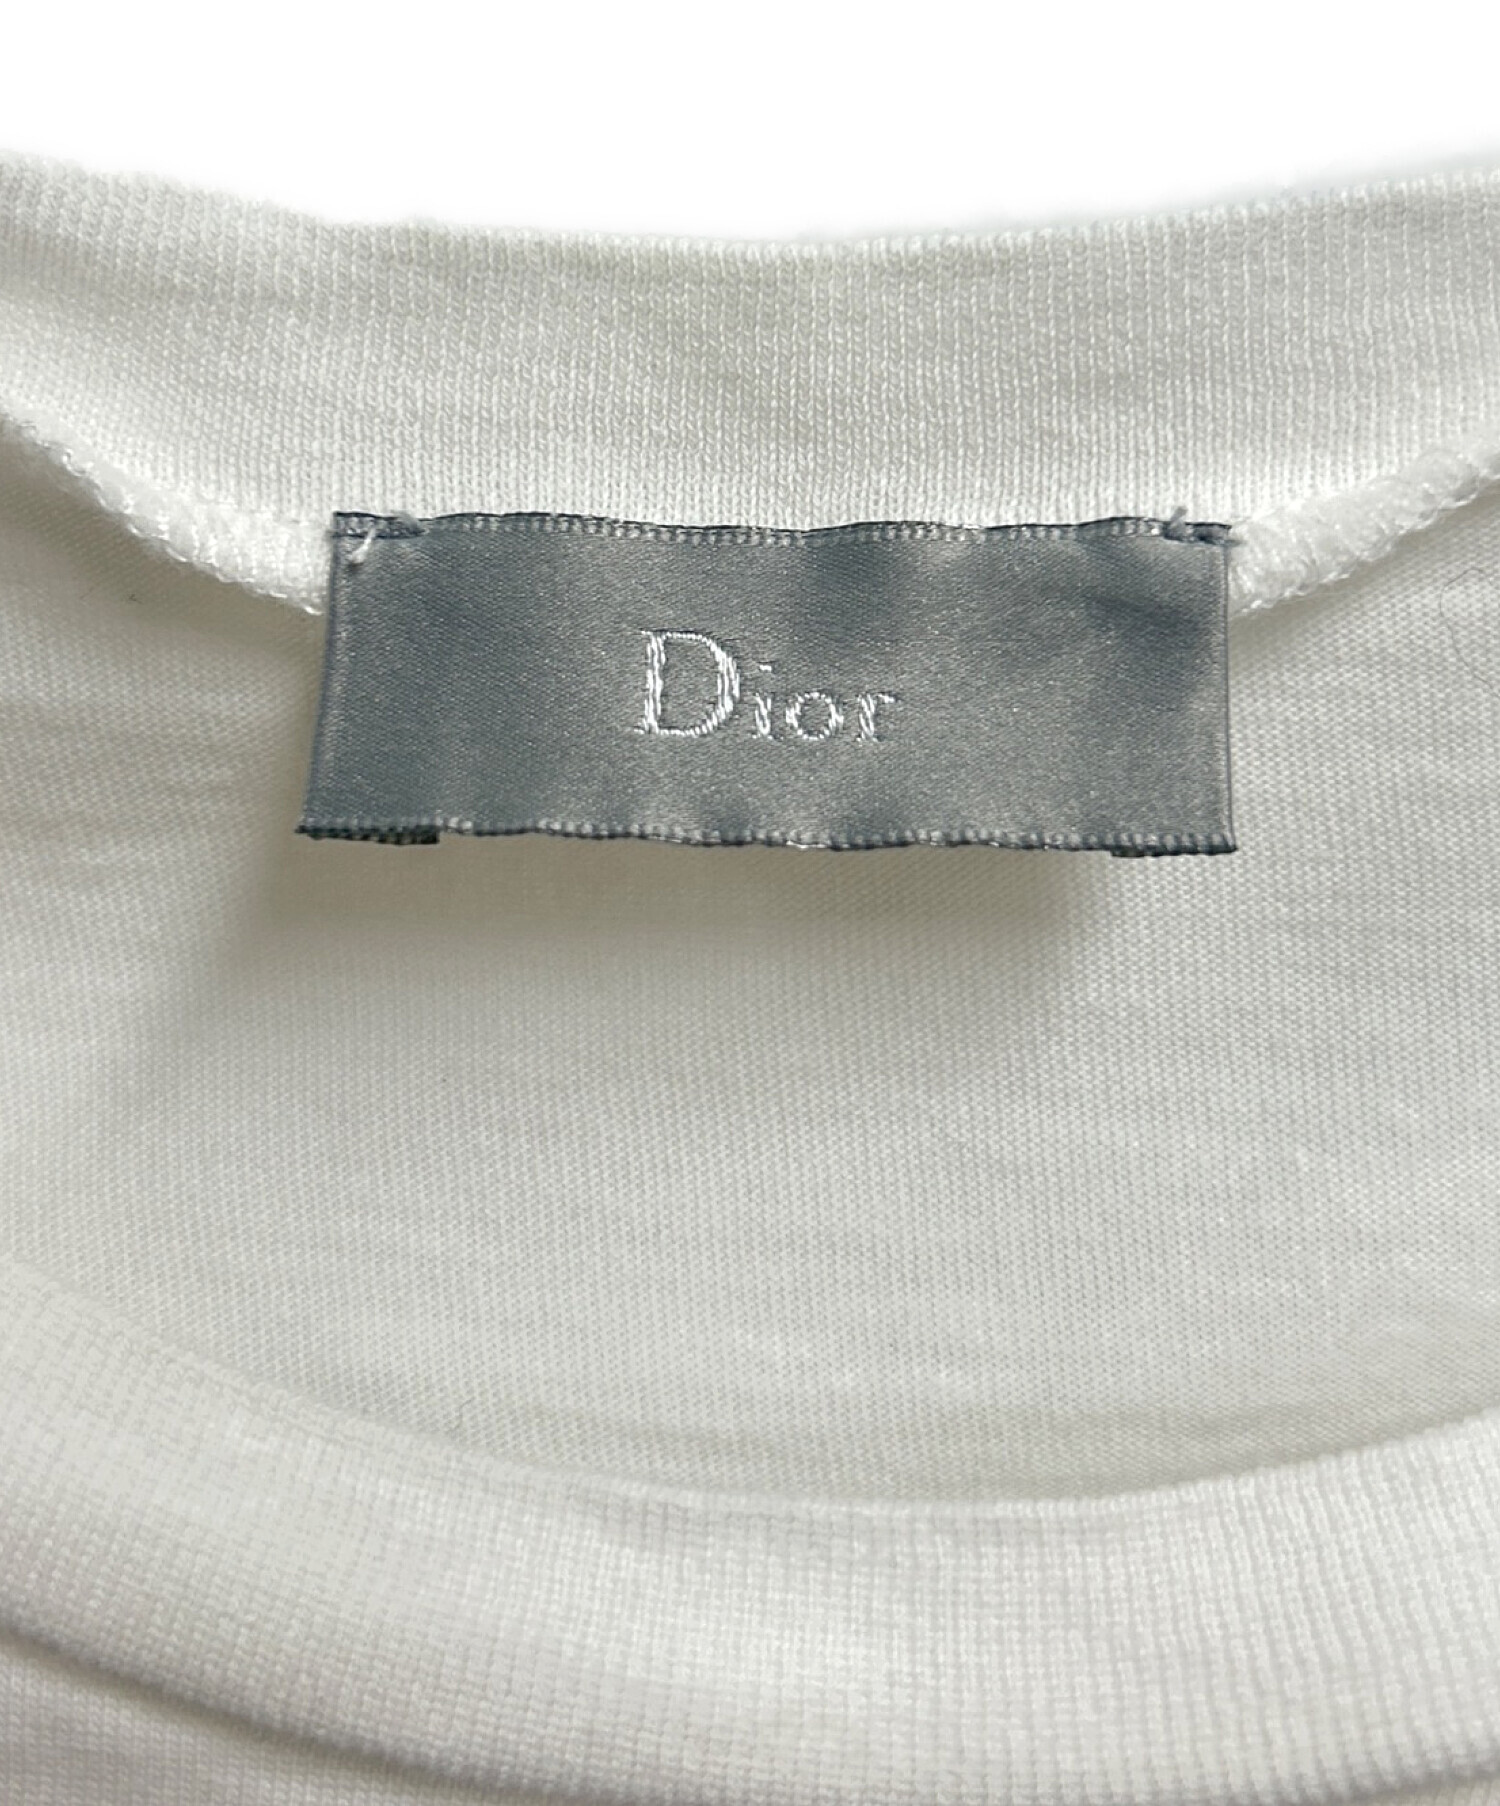 Christian Dior (クリスチャン ディオール) Tシャツ ホワイト サイズ:S